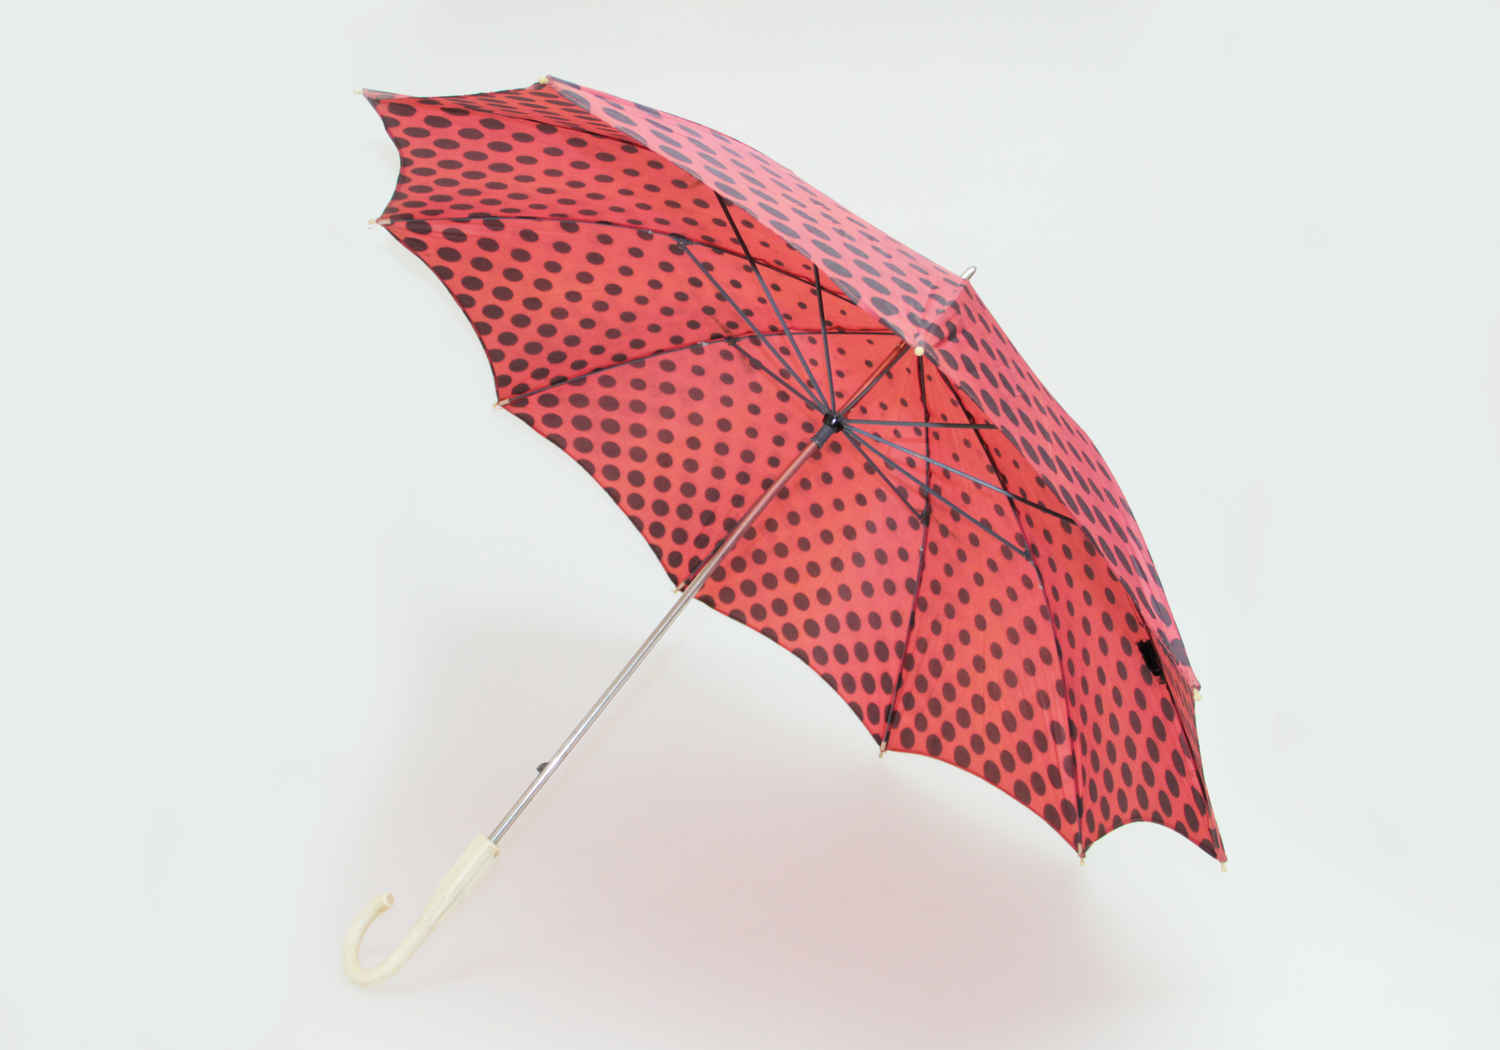 Зонтики 10. O-Zont зонт складной красный 25583642. День рождения складно го зонтик. День складного зонтика. День рождения складного зонтика 4 мая.